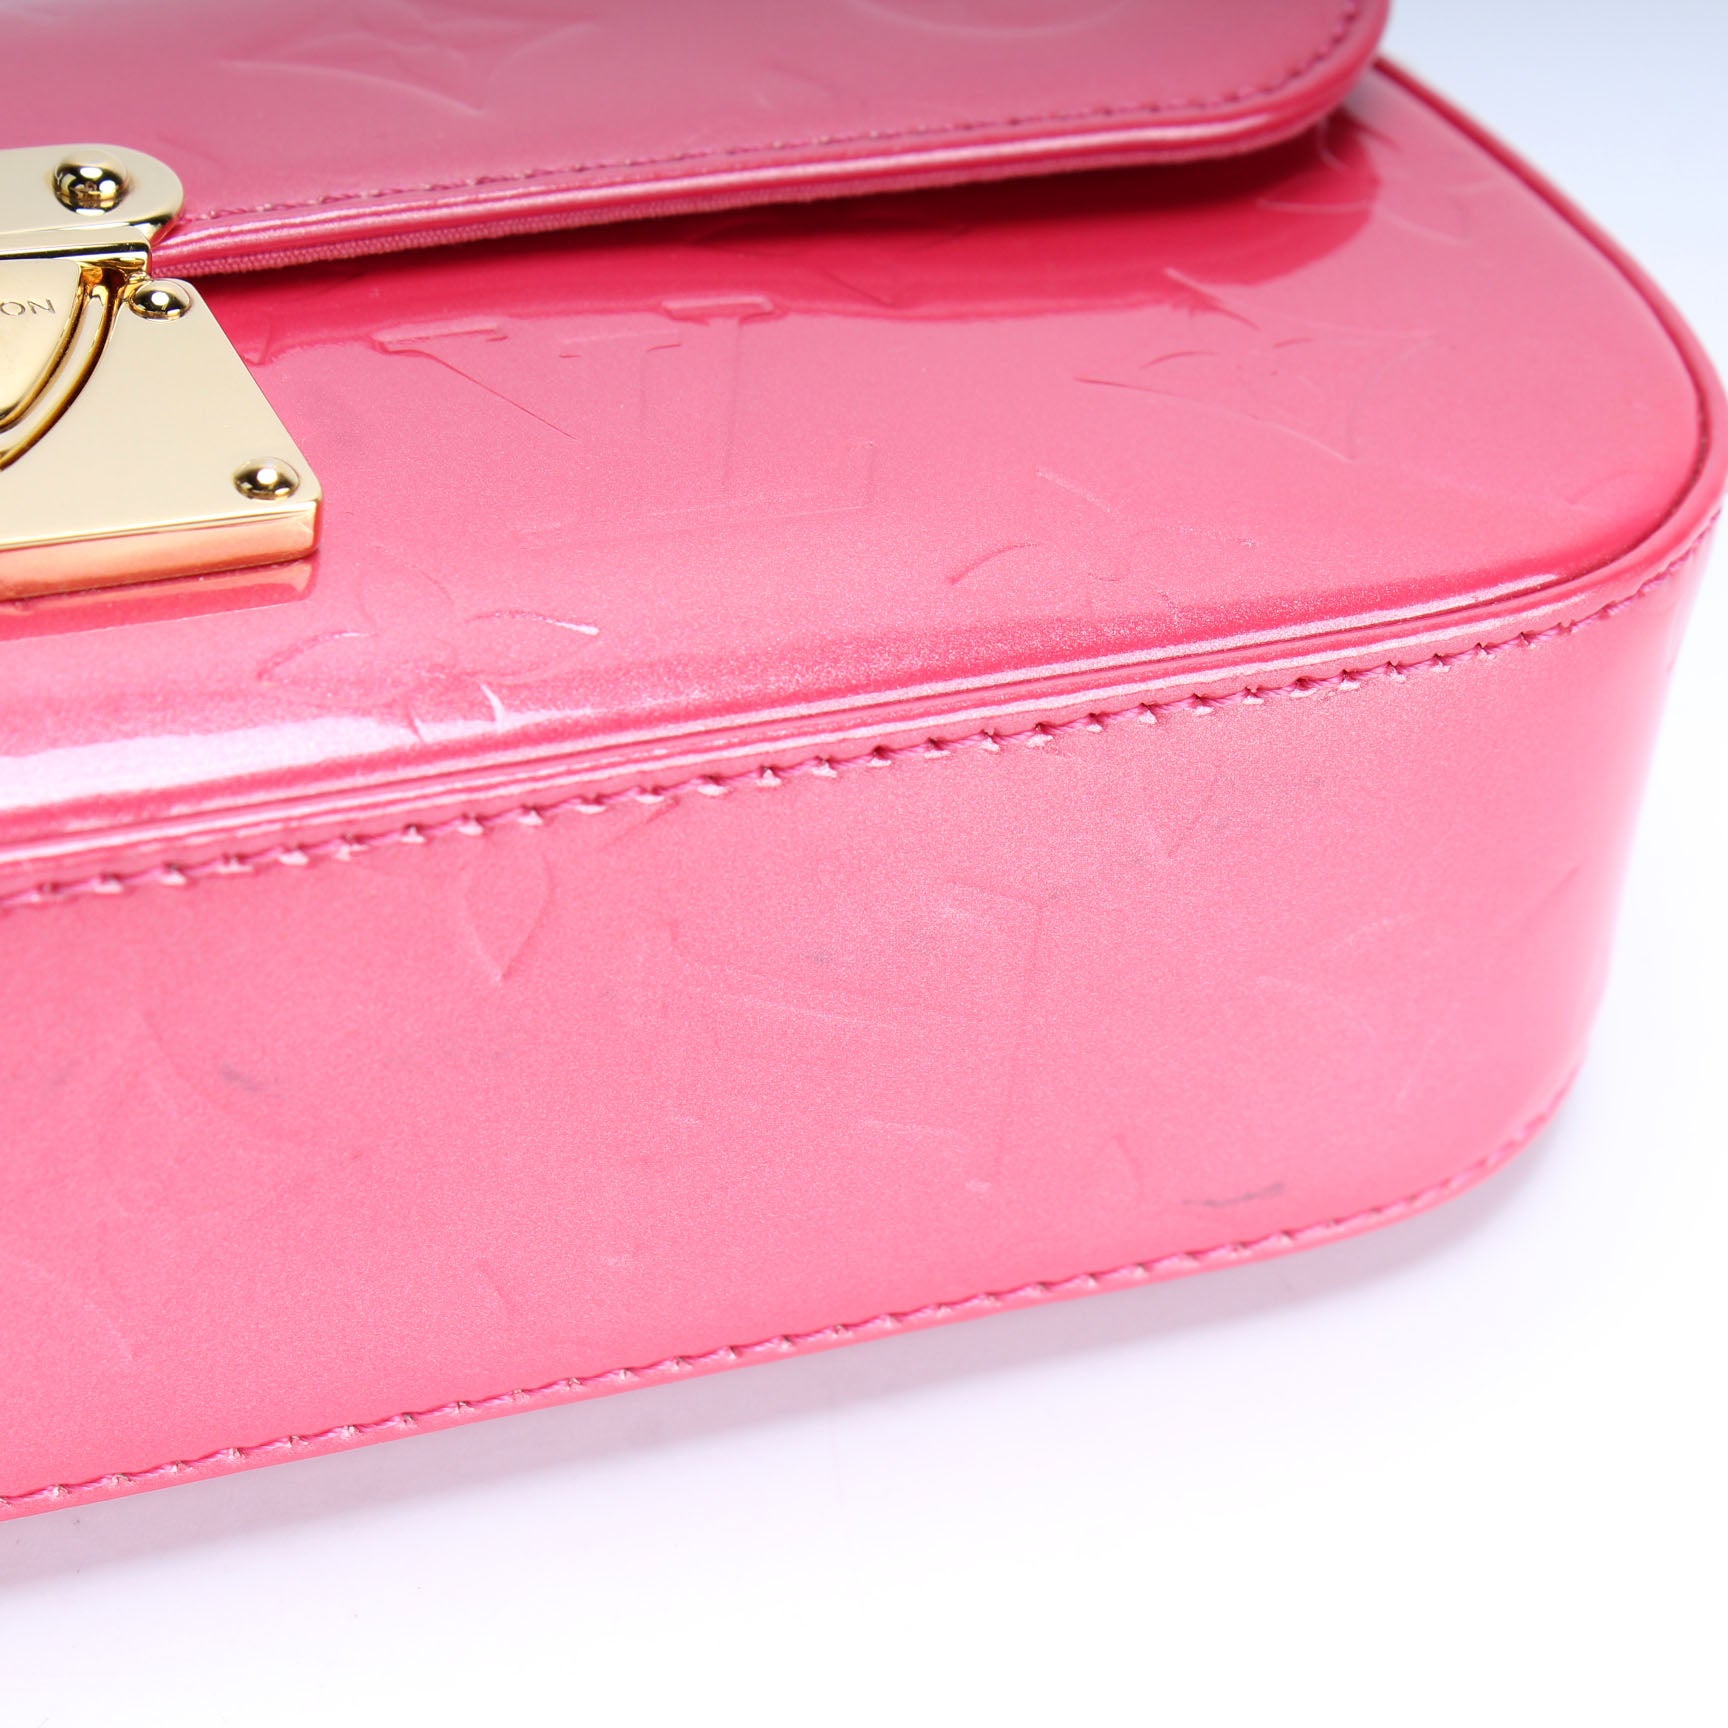 Malibu Street Vernis – Keeks Designer Handbags